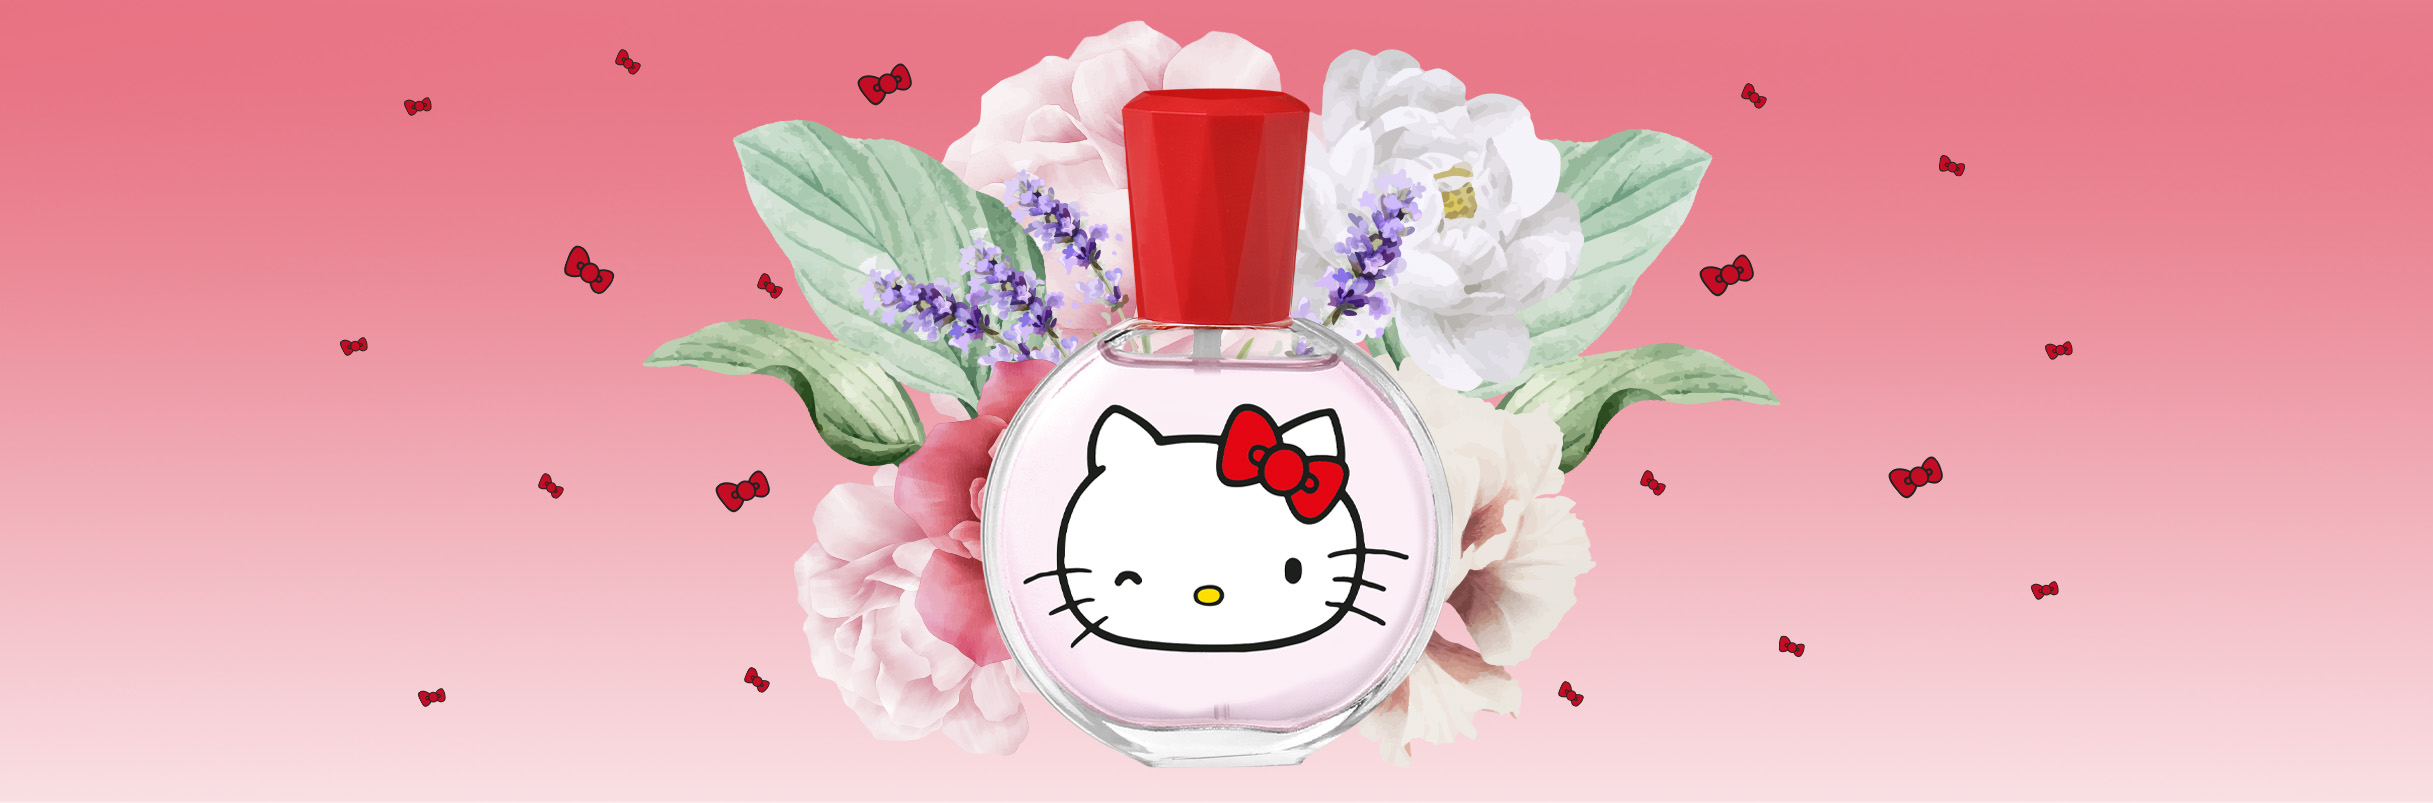 The Hello Kitty fragrances